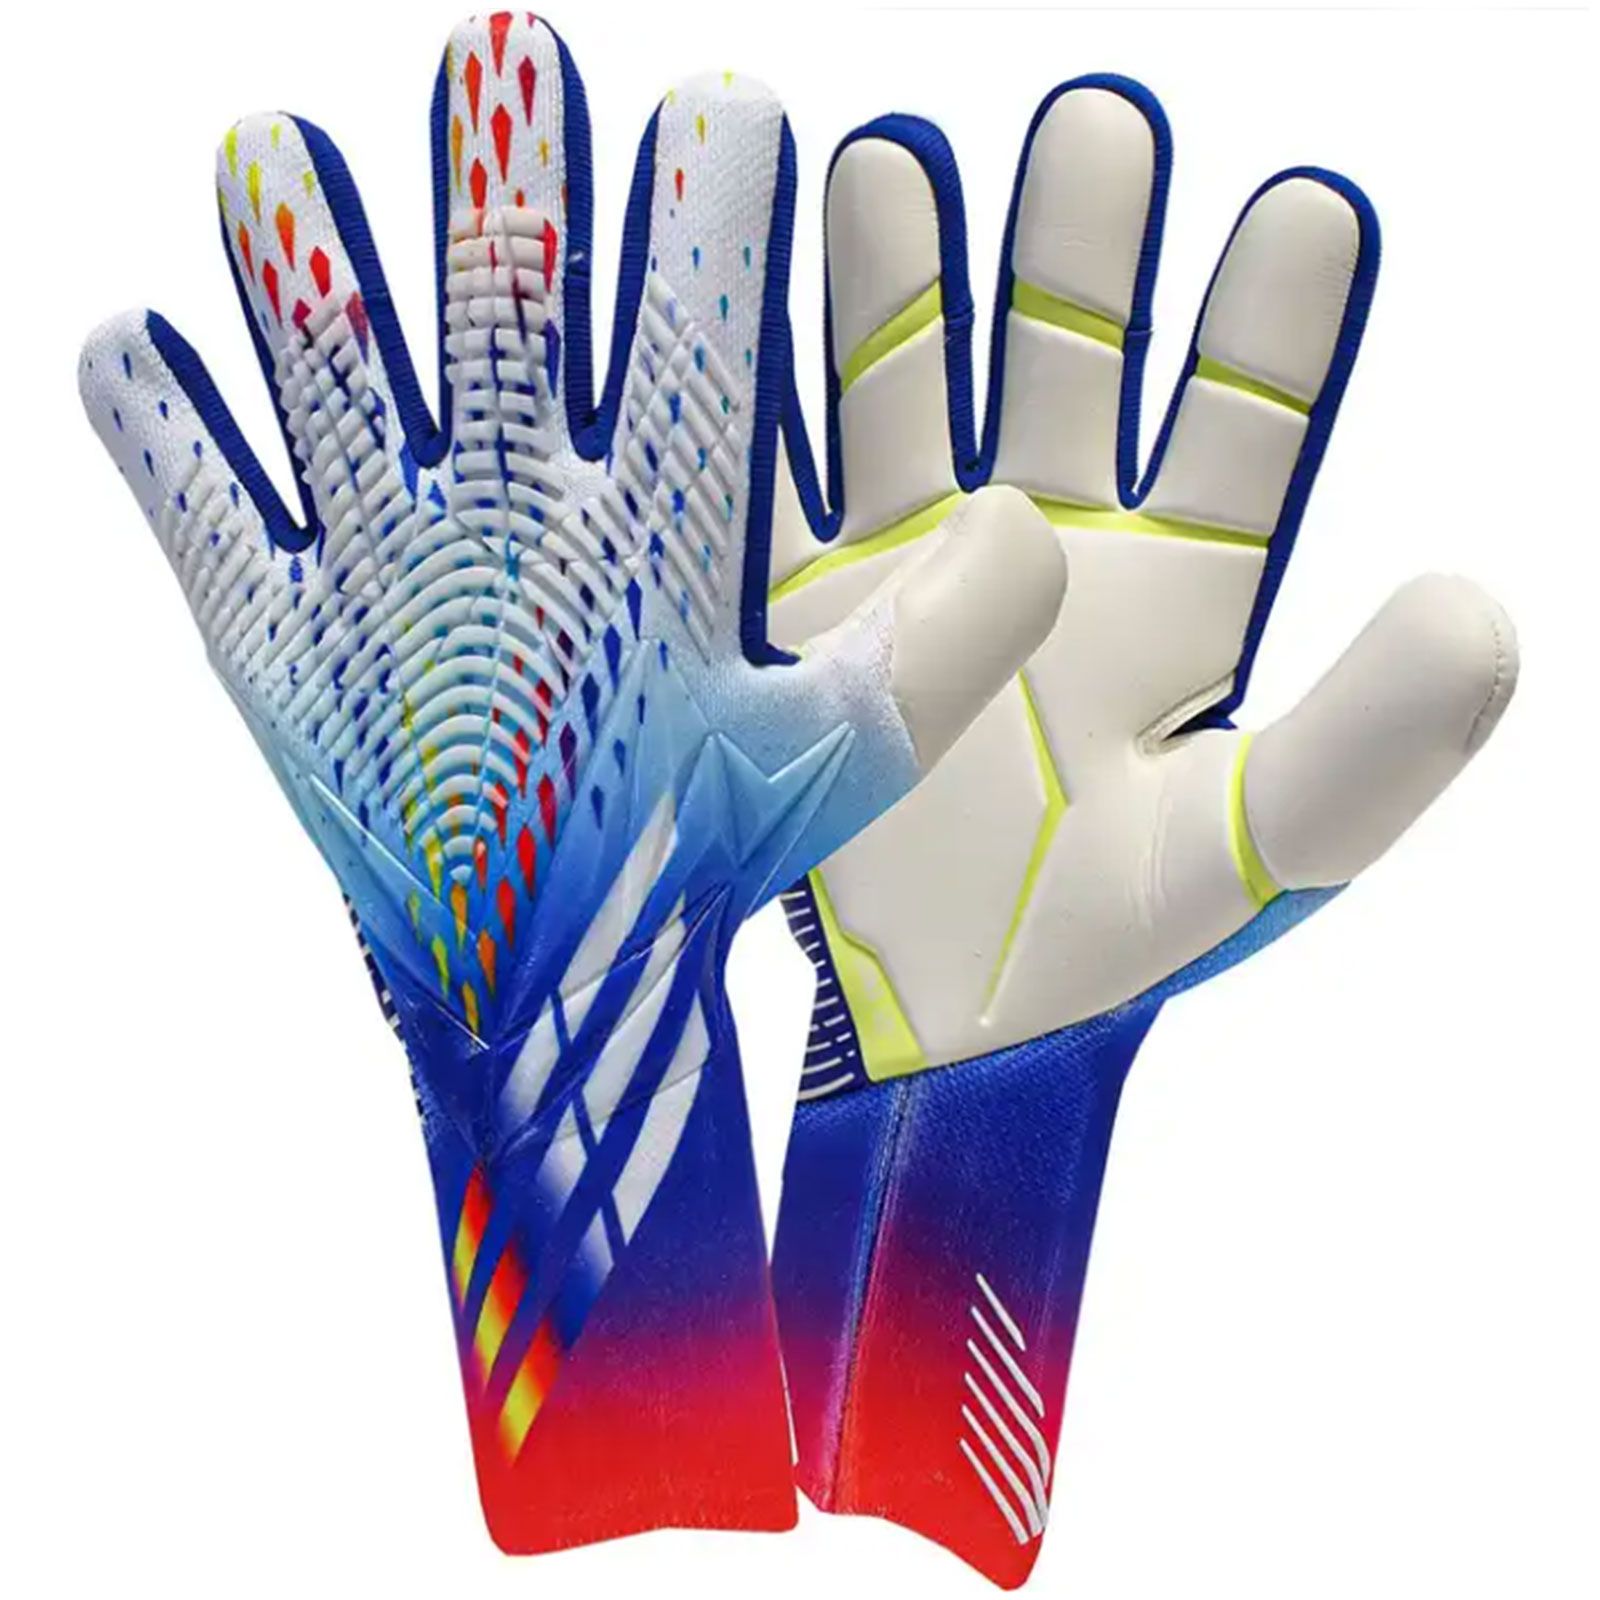 Адидас предатор перчатки. Вратарские перчатки adidas Predator. Футбольные перчатки адидас предатор. Adidas Predator Pro Gloves. Adidas Predator Edge Gloves.